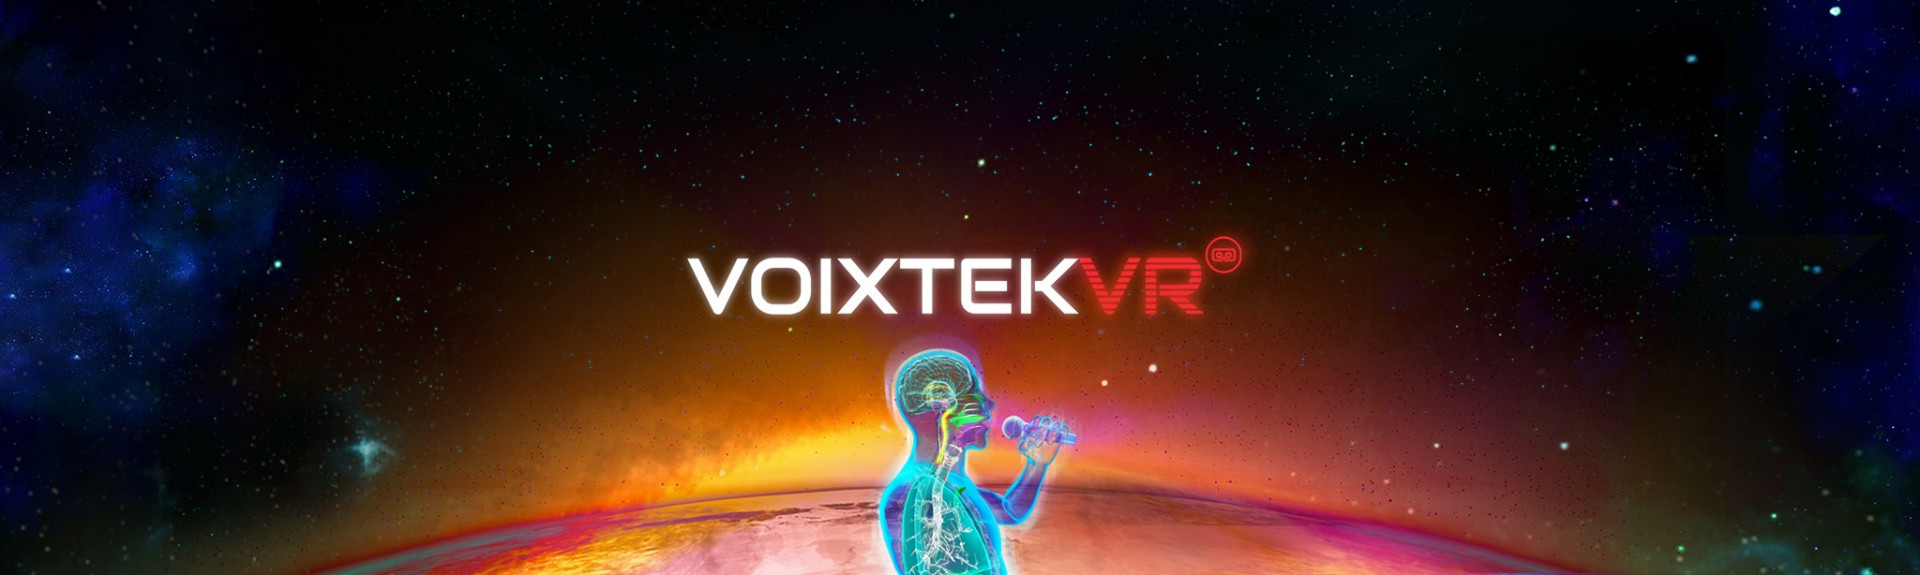 Voixtek VR